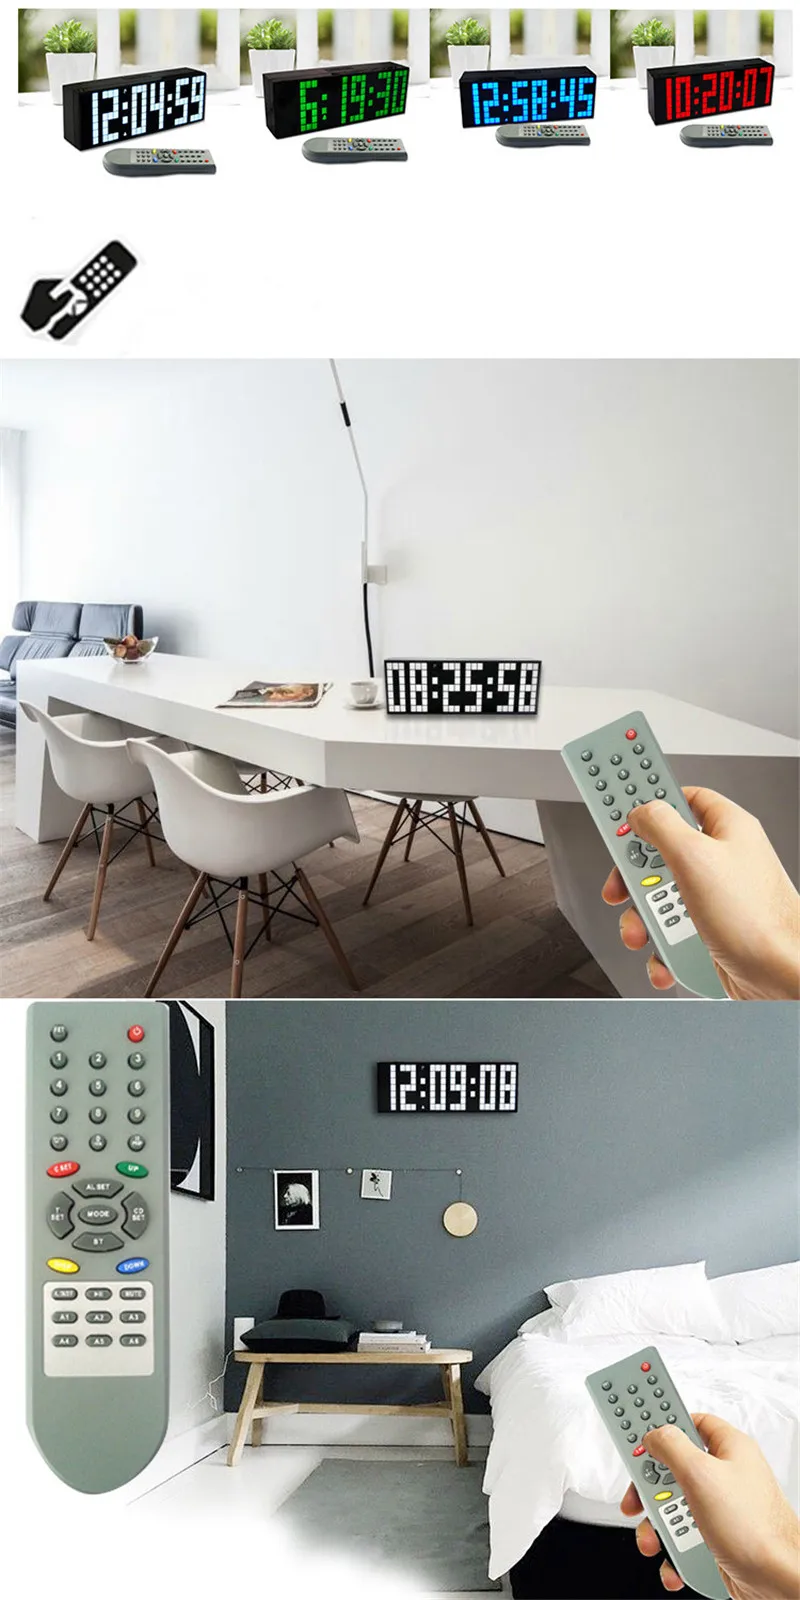 KOSDA светодиодный Будильник лего цифровой будильник для детей Reloj Despertador Wake Up настольные электронные настенные часы